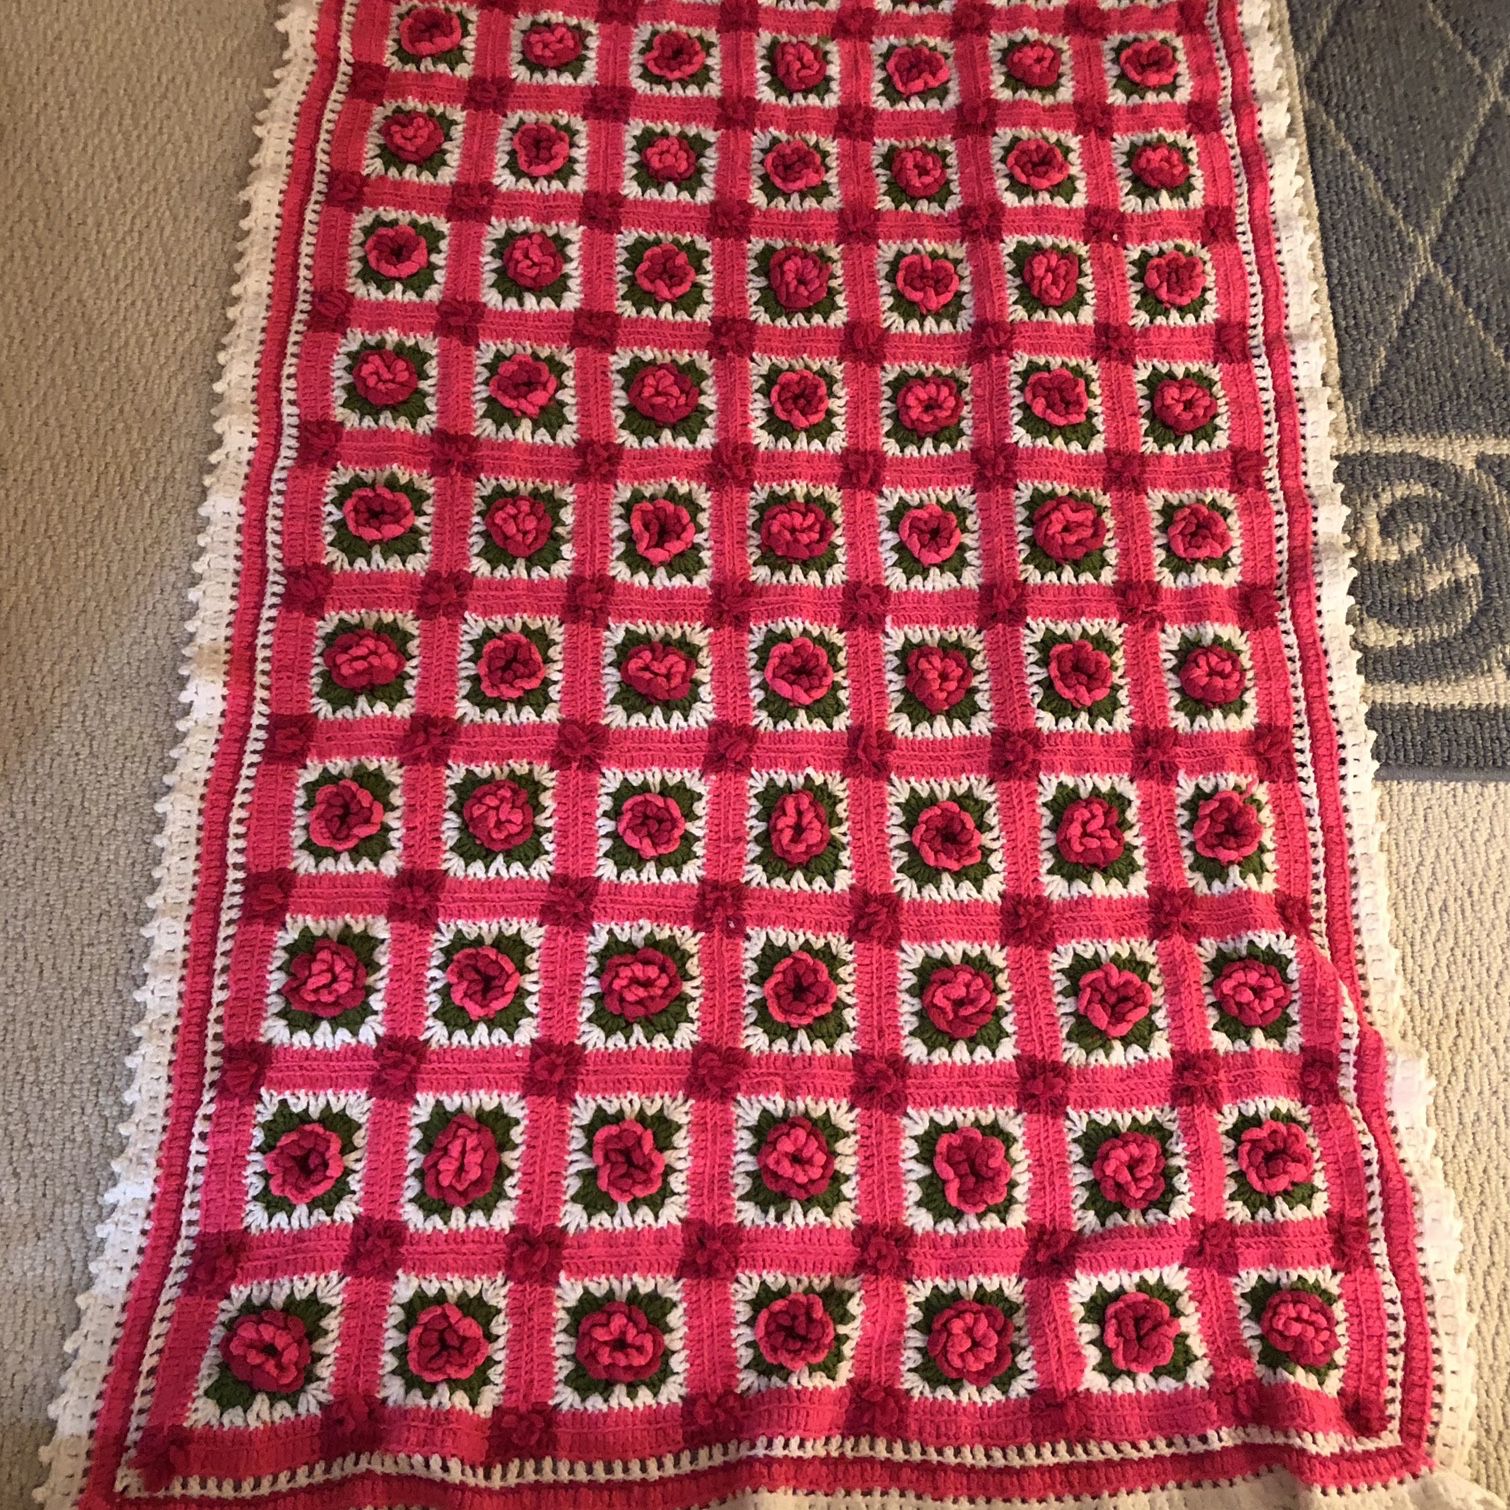 Handmade Blanket